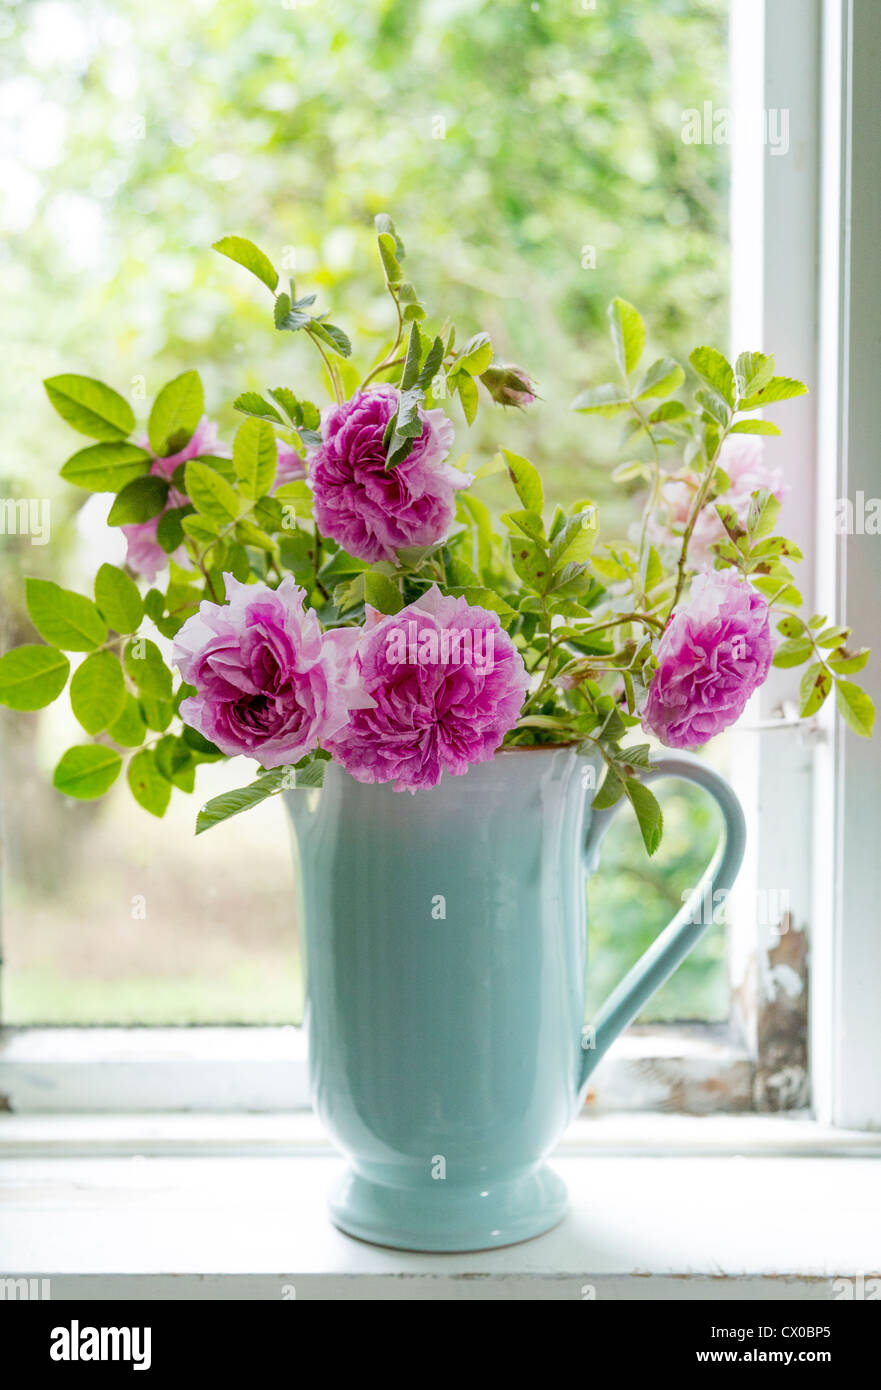 Rosa rosas en una jarra azul / jarrón en el alféizar de la ventana de una cabaña rústica Foto de stock